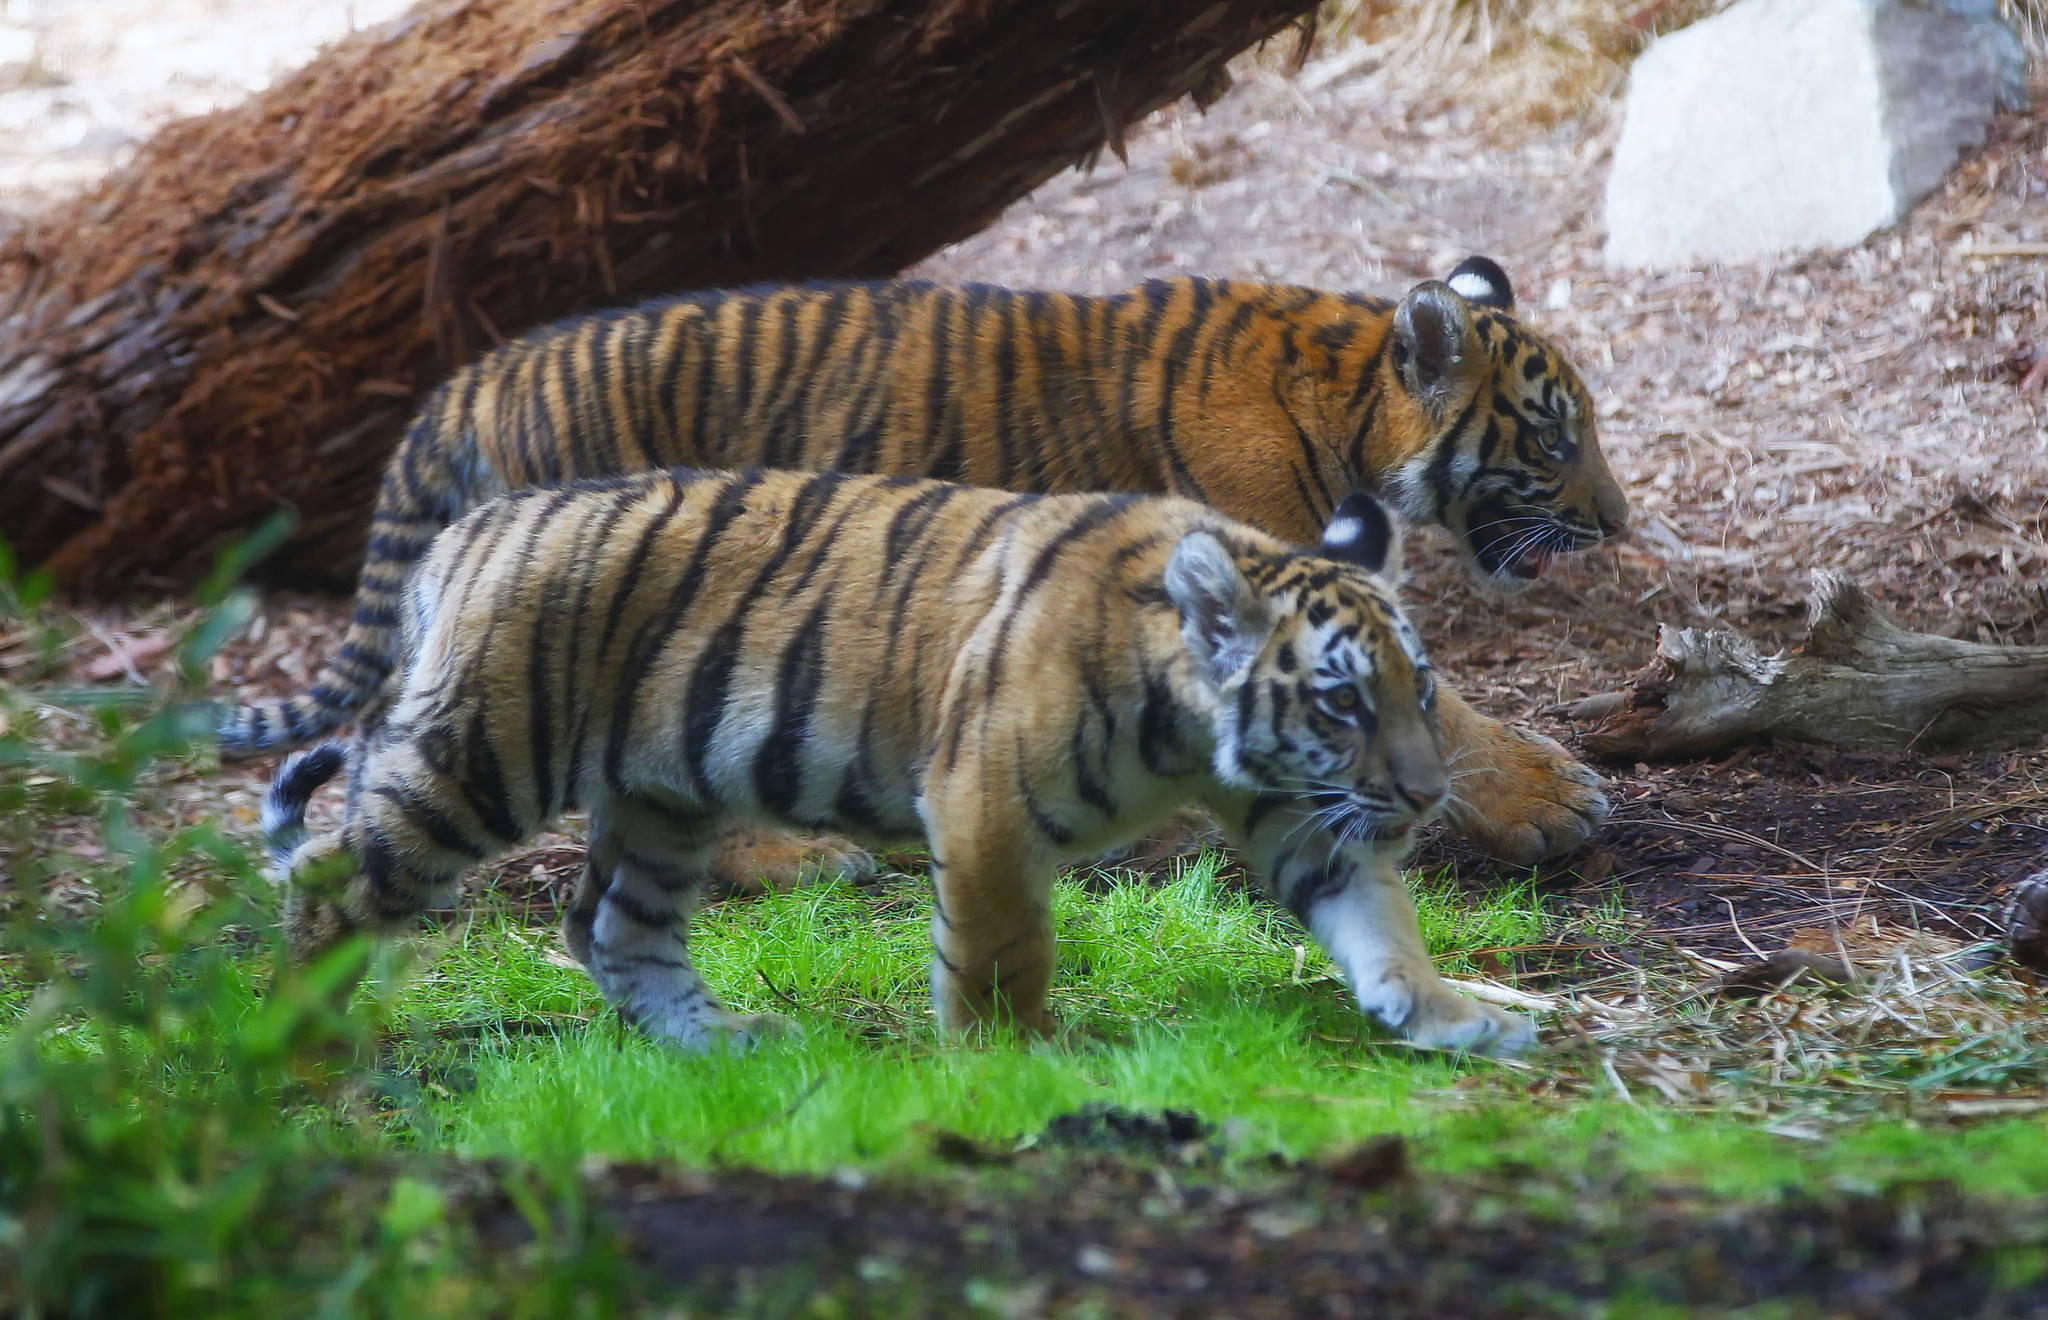 A rescued Bengal tiger cub and his companion, a Sumatran tiger cub ...